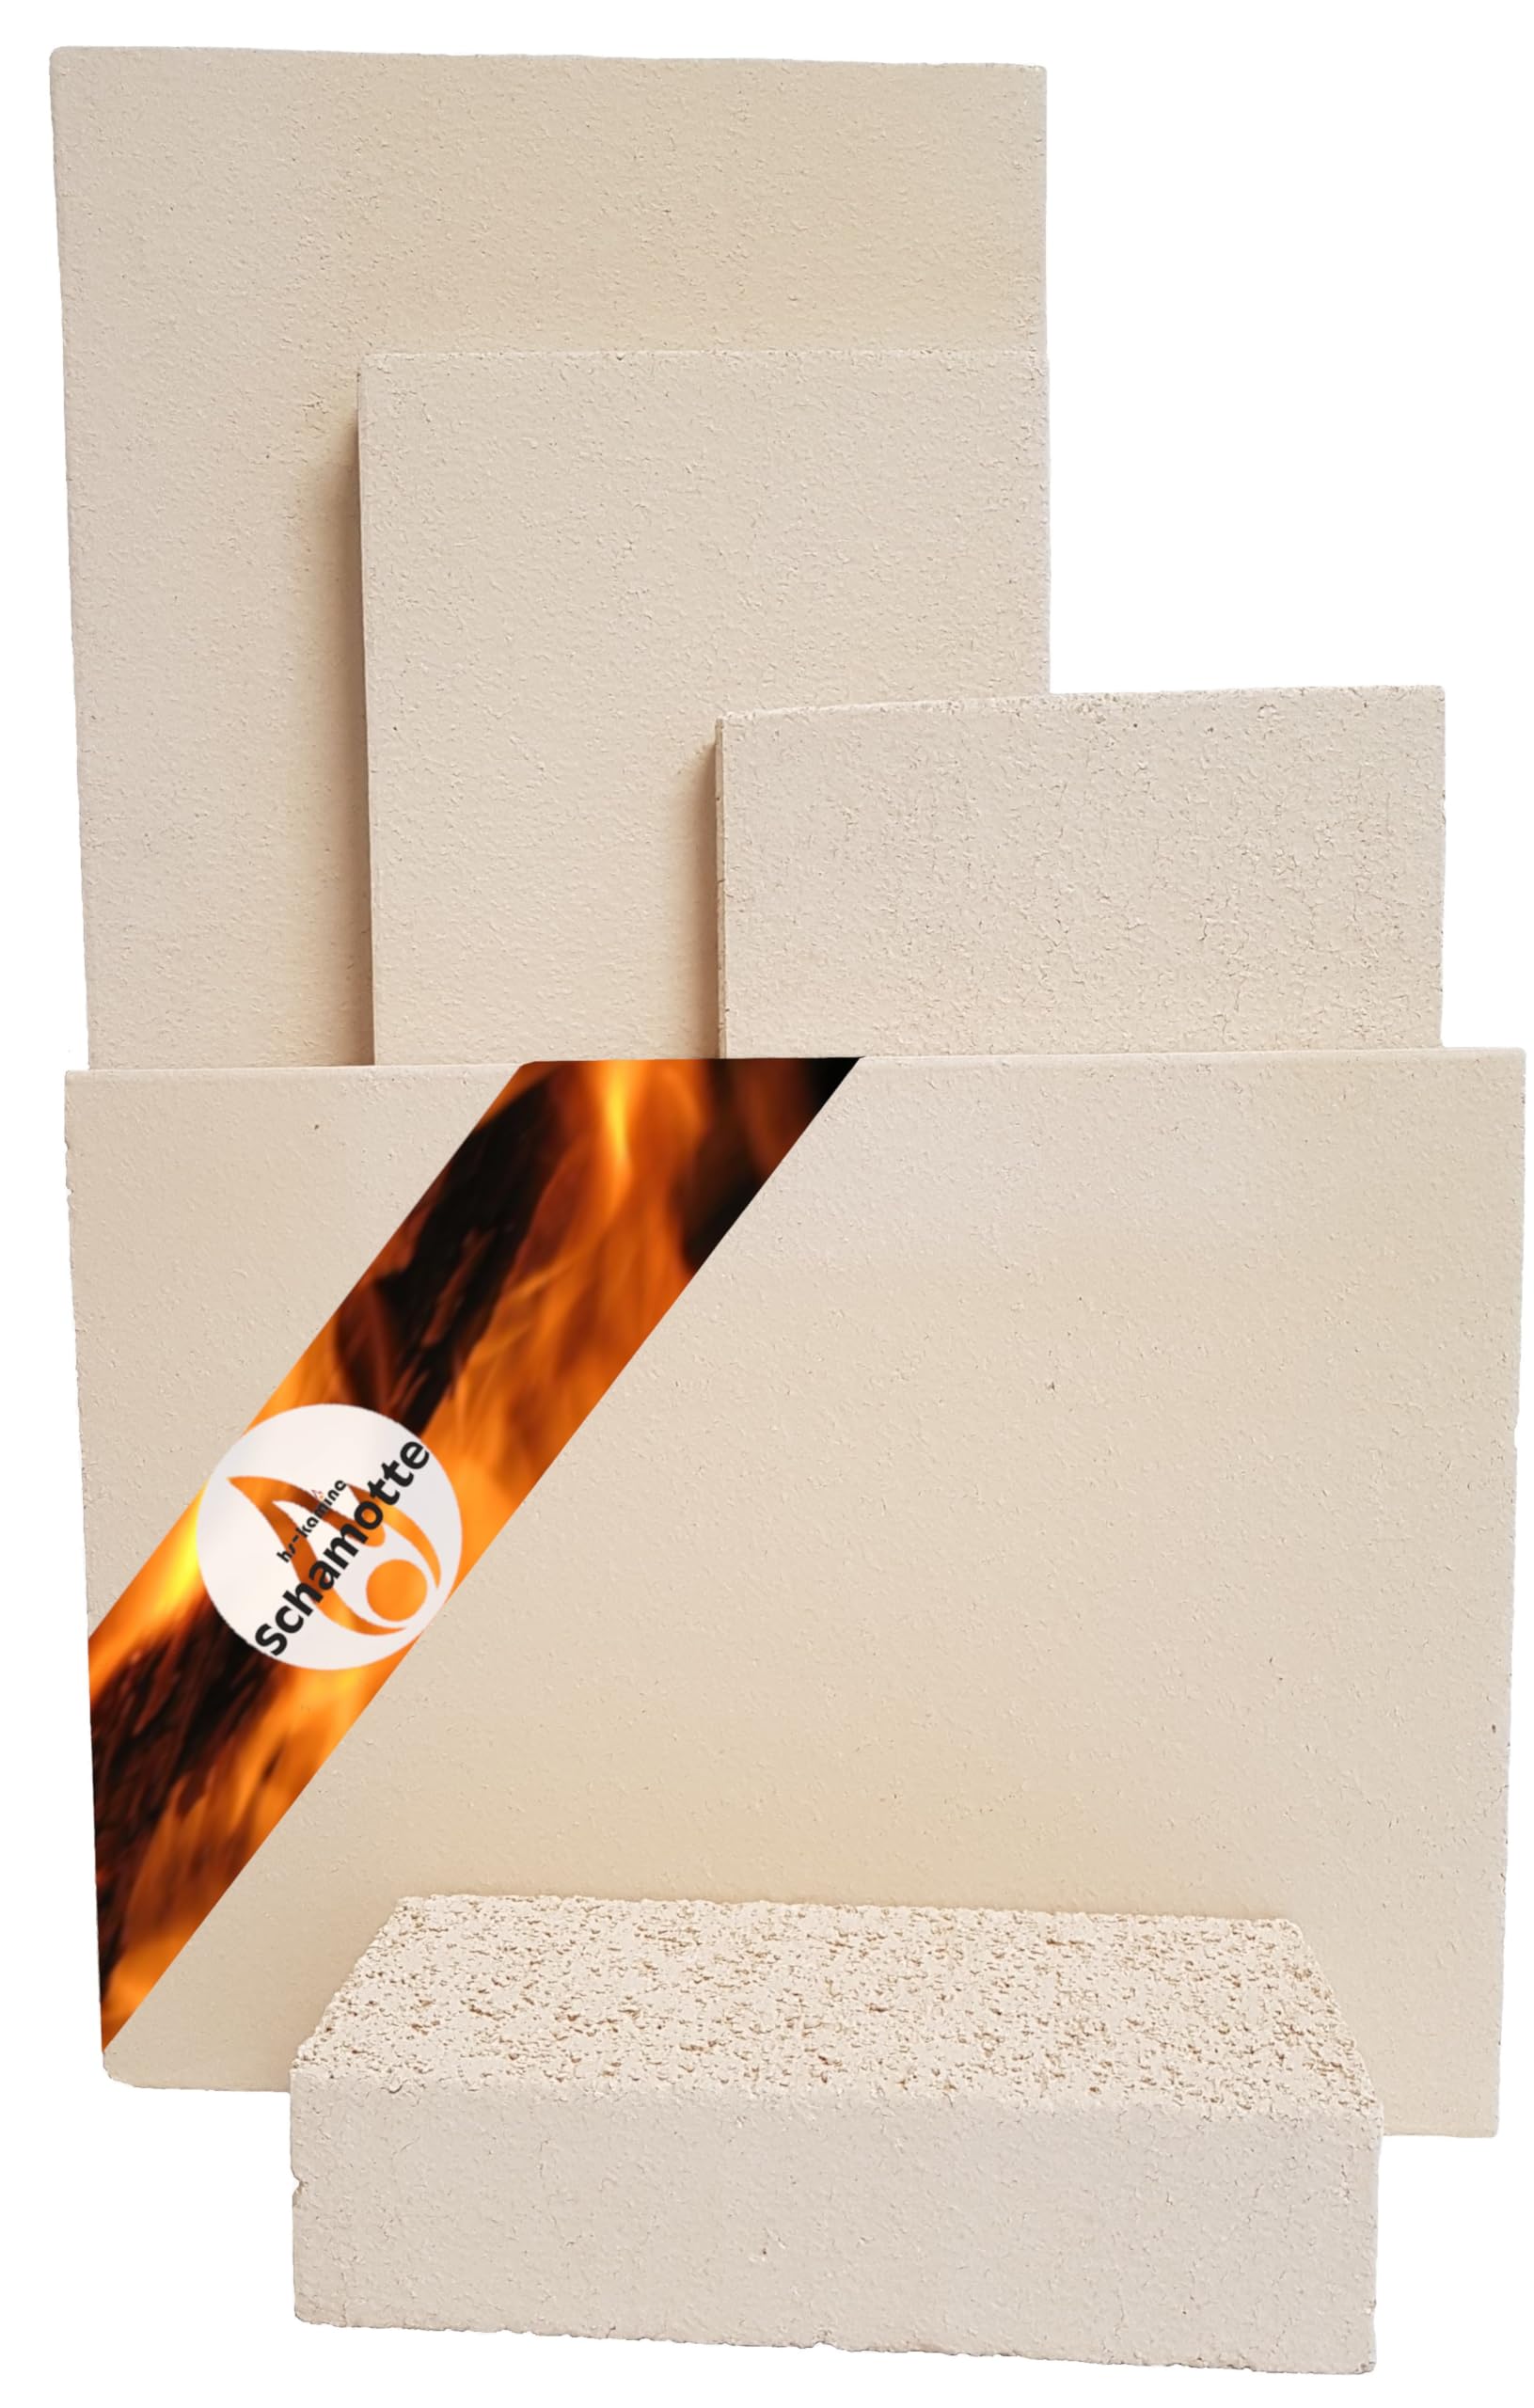 Schamotteplatten Premium Wh für den Feuerraum und auch für Holzbacköfen, Pizzaöfen und Grills feuerfest & lebensmittelecht viele Größen online verfügbar (400 x 200 x 20 mm, 3 Stück)